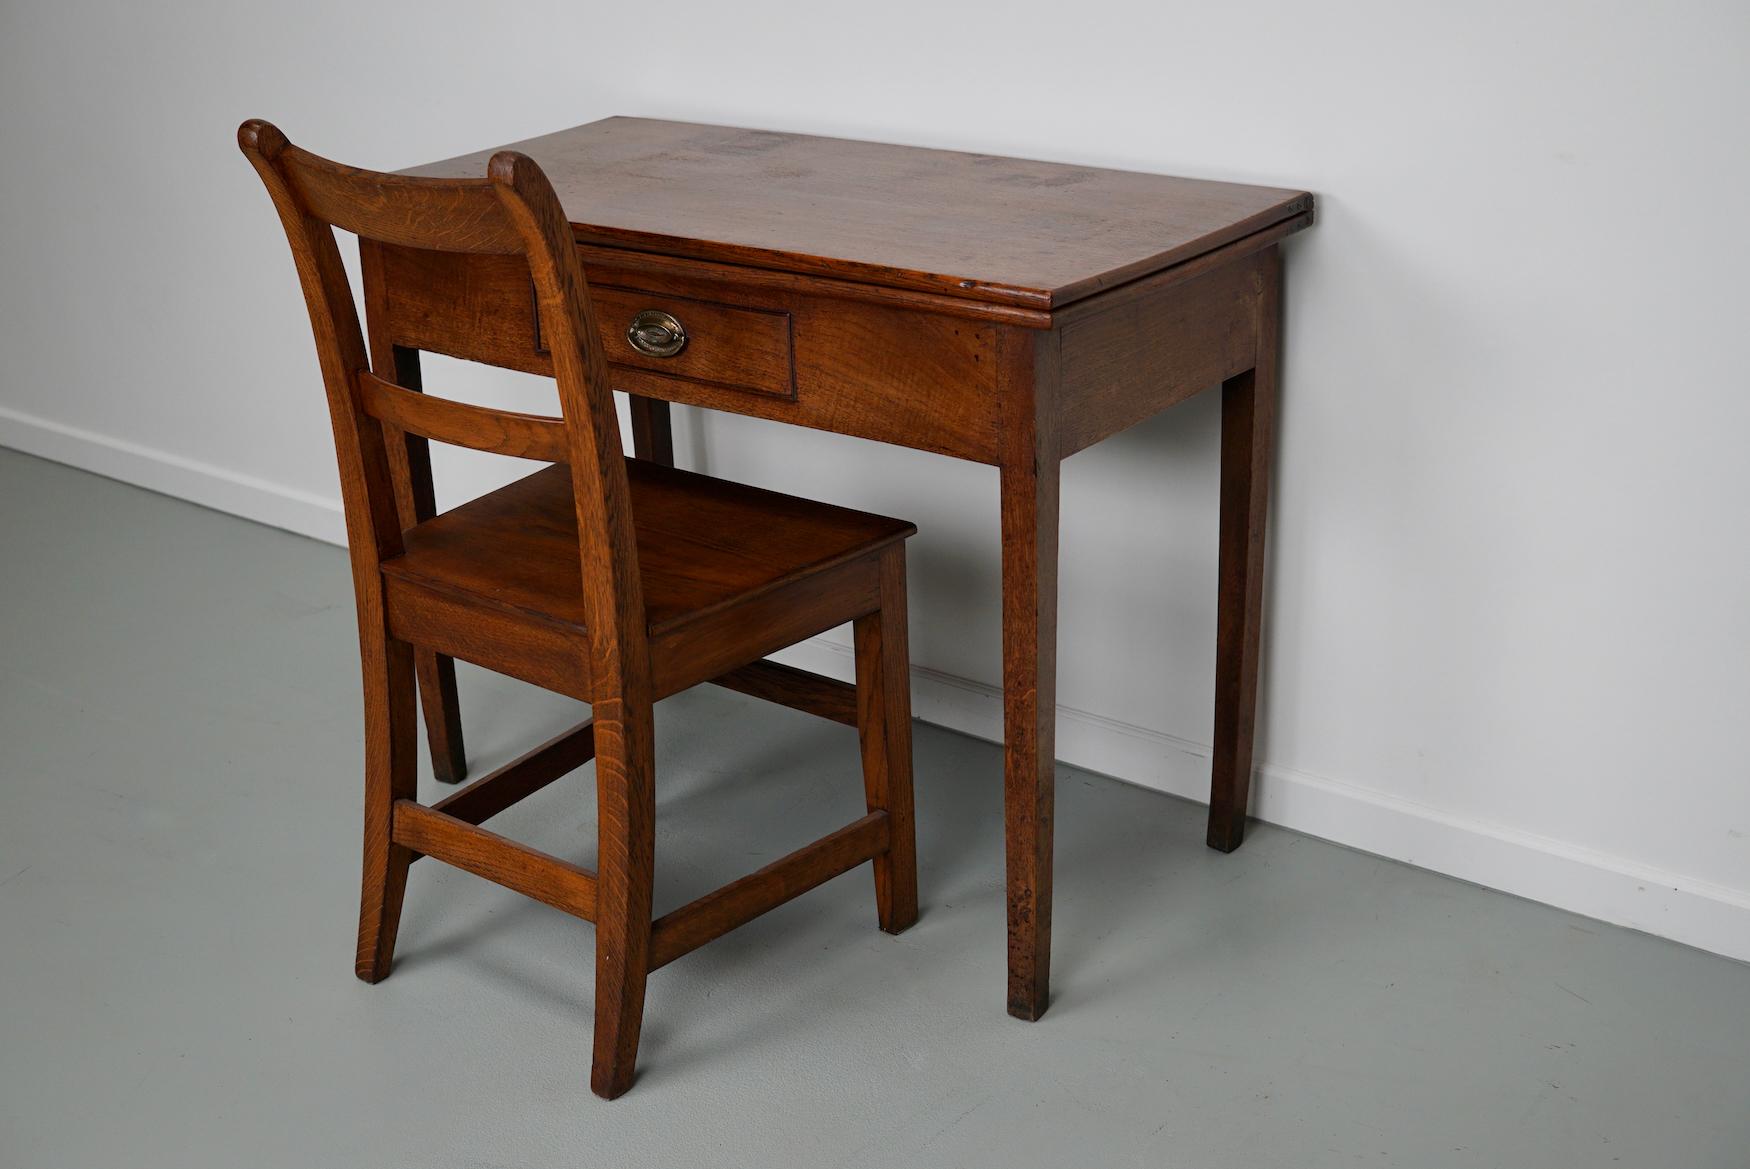 Dieser Schreibtisch wurde um 1800 in England entworfen und hergestellt. Er kann zu einem großen quadratischen Tisch gefaltet werden. Es kommt mit einer schönen antiken Eiche Stuhl, der die gleiche Farbe / Oberfläche hat. 